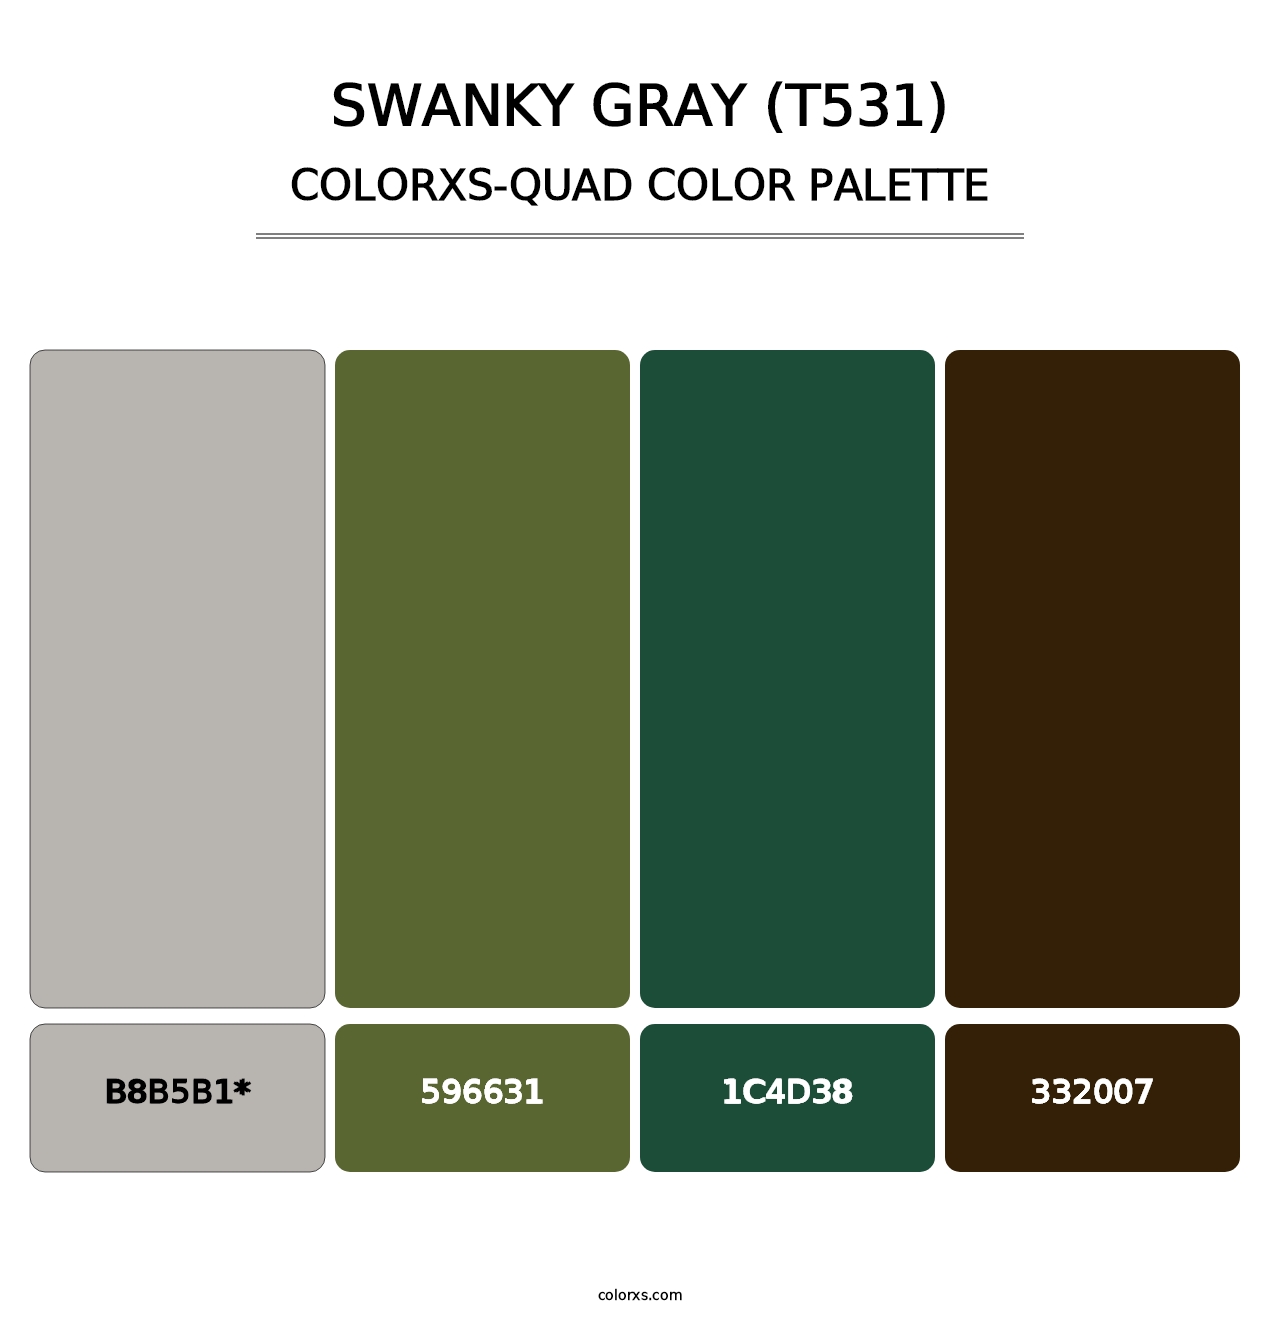 Swanky Gray (T531) - Colorxs Quad Palette